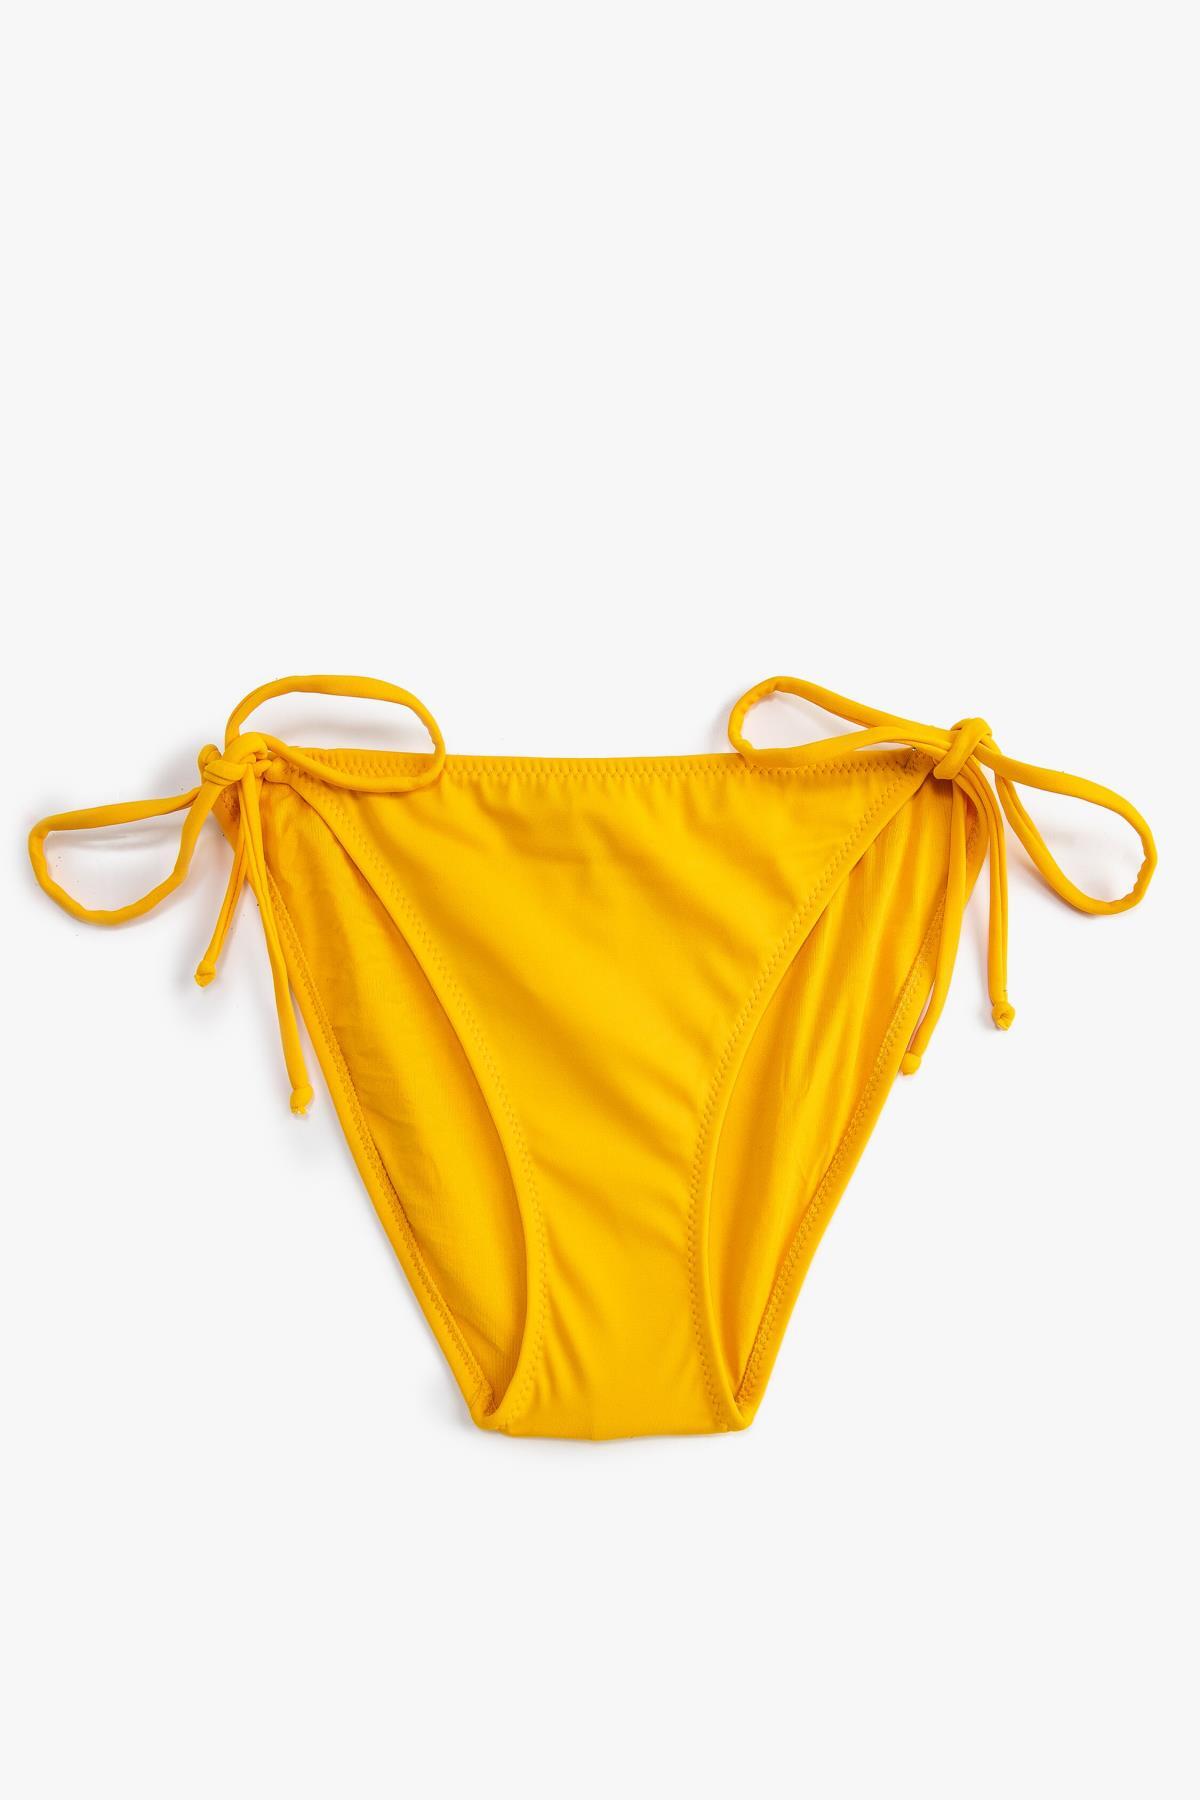 Koton Women's Bikini Bottom